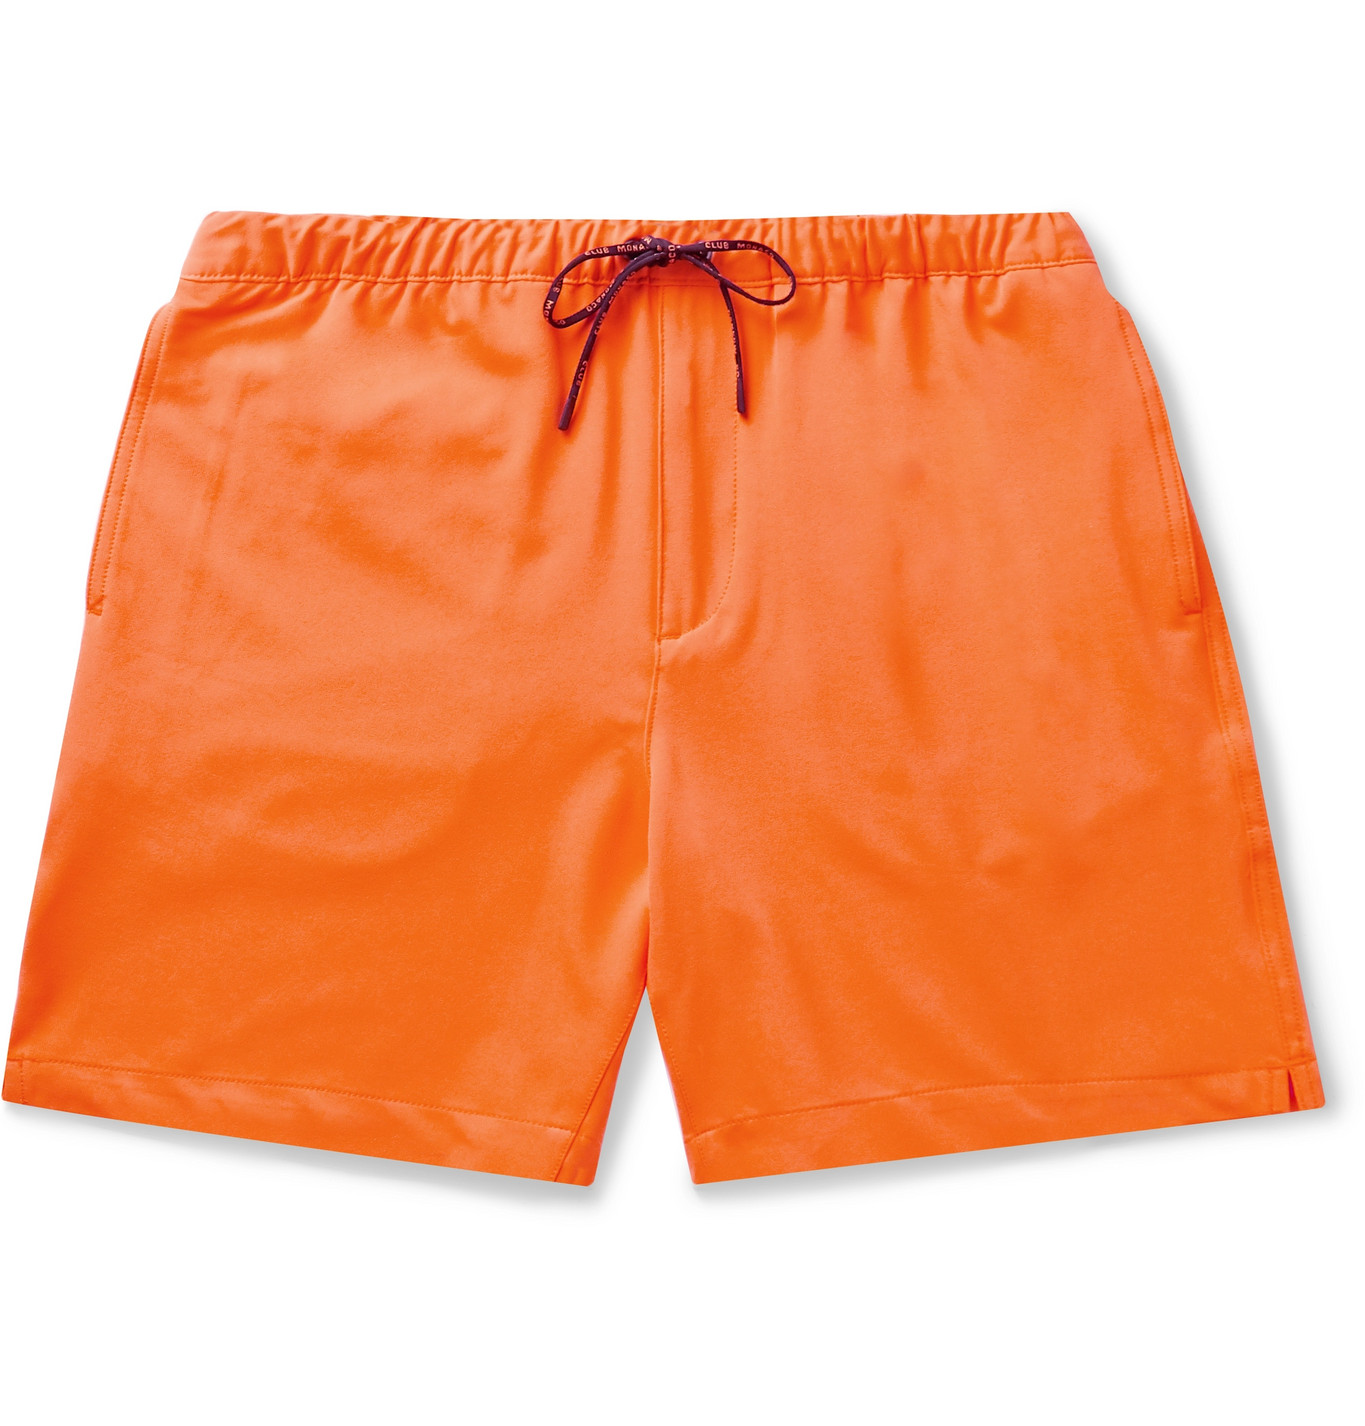 orange jersey shorts